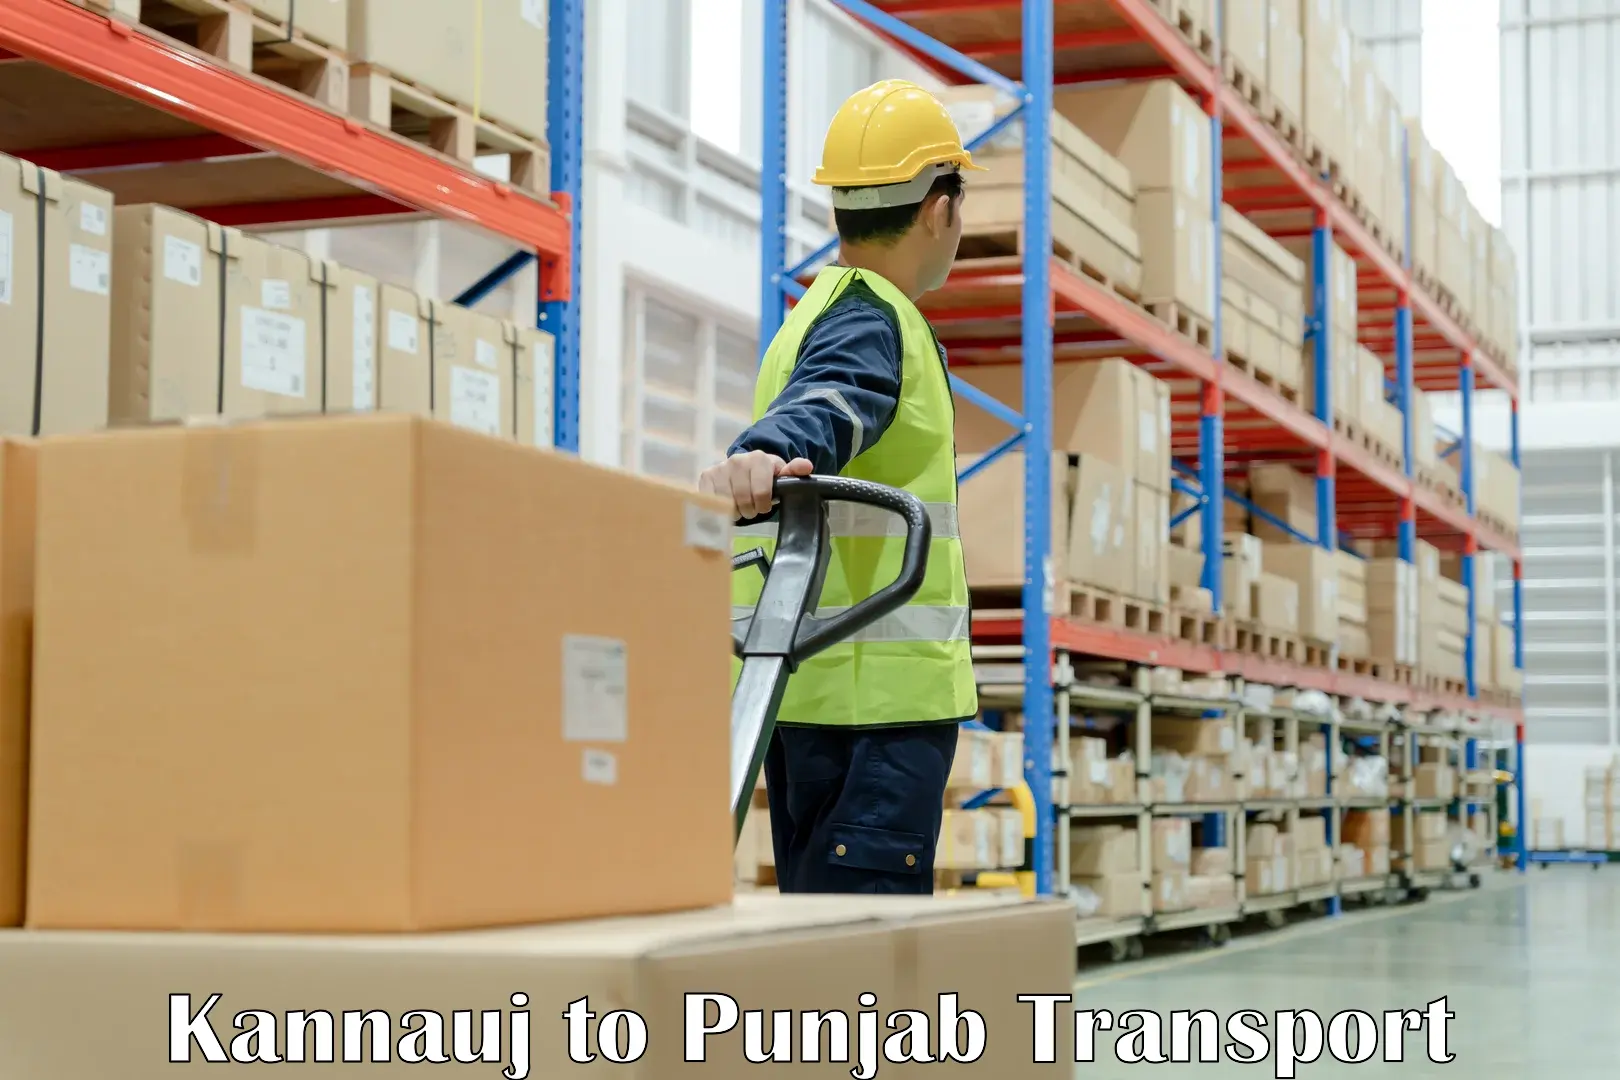 Container transport service Kannauj to Barnala